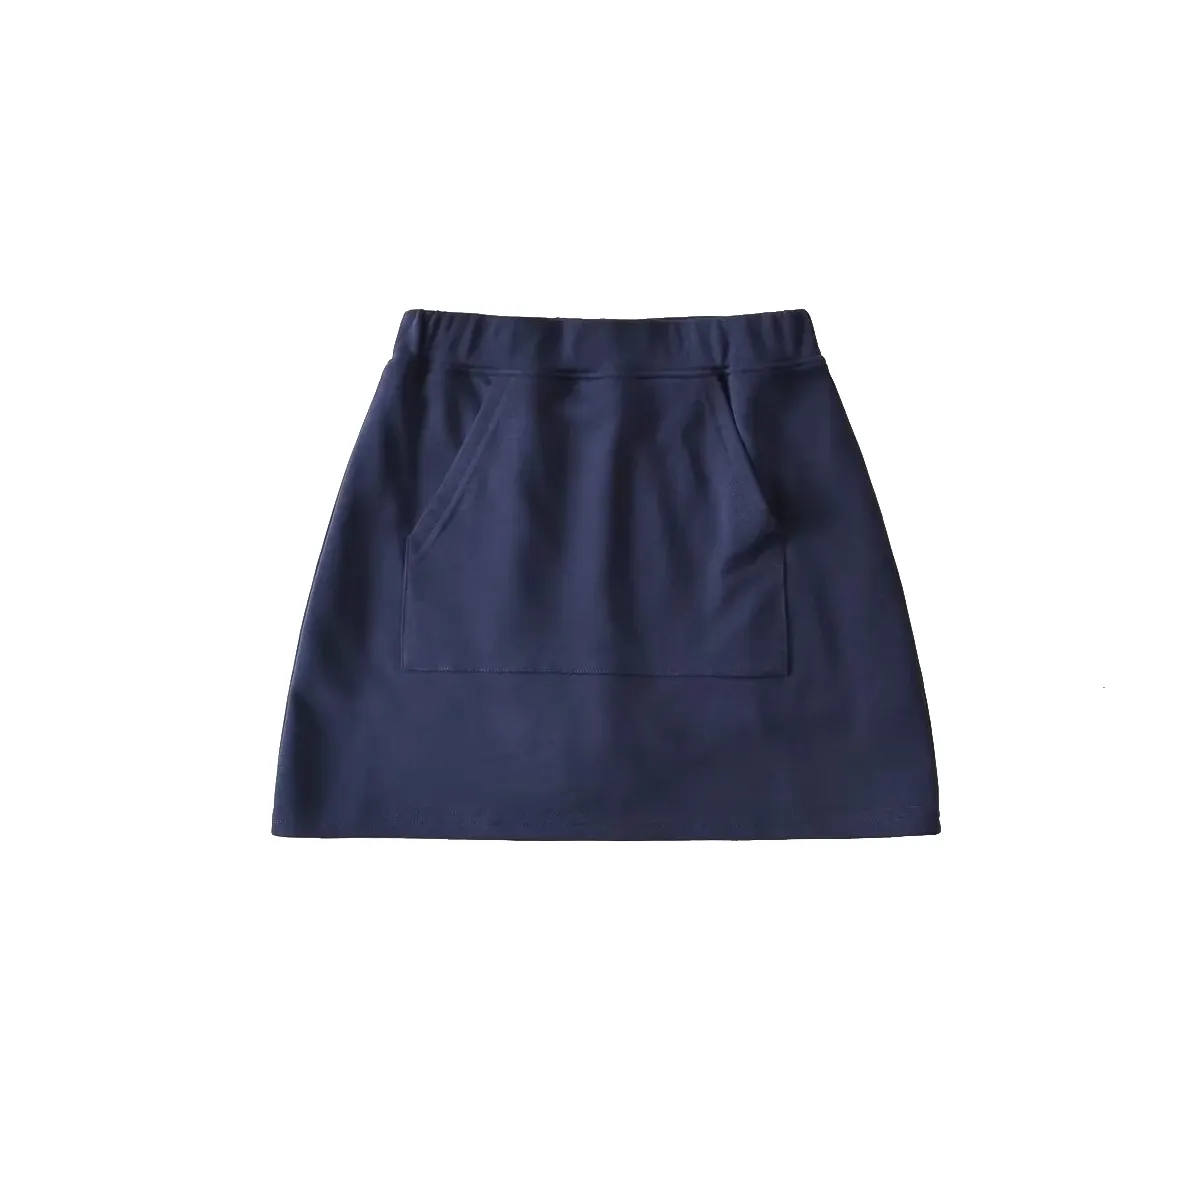 American elastic sweet cool womens golf skirt versatile wrap skirt mini skirt for women